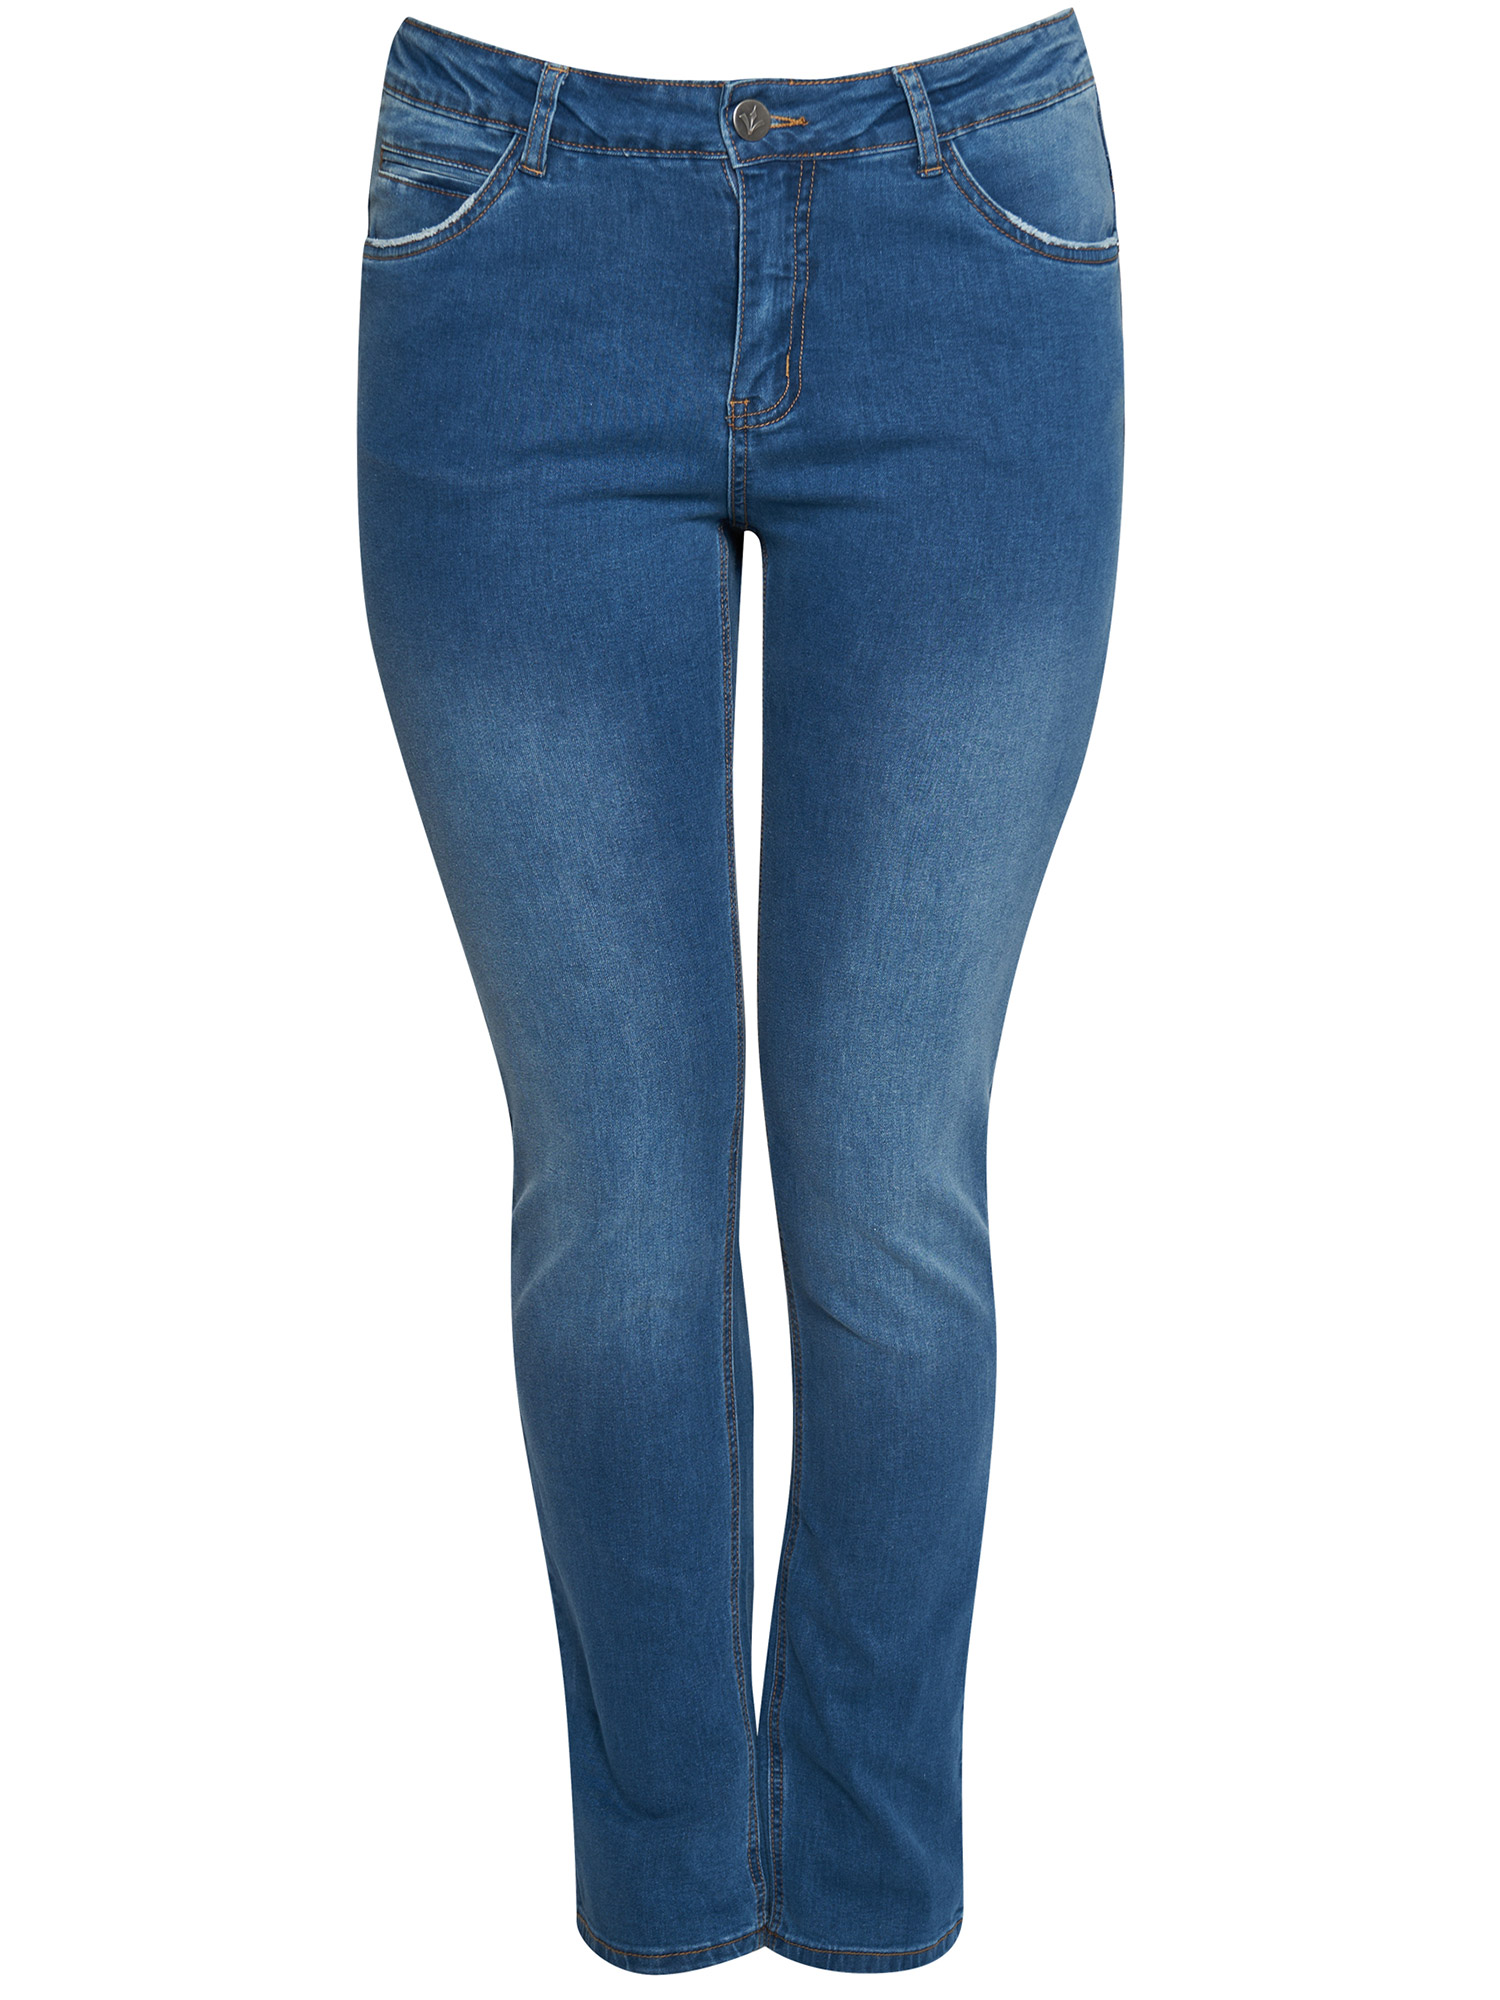 MONACO - Ljusa jeans fra Adia